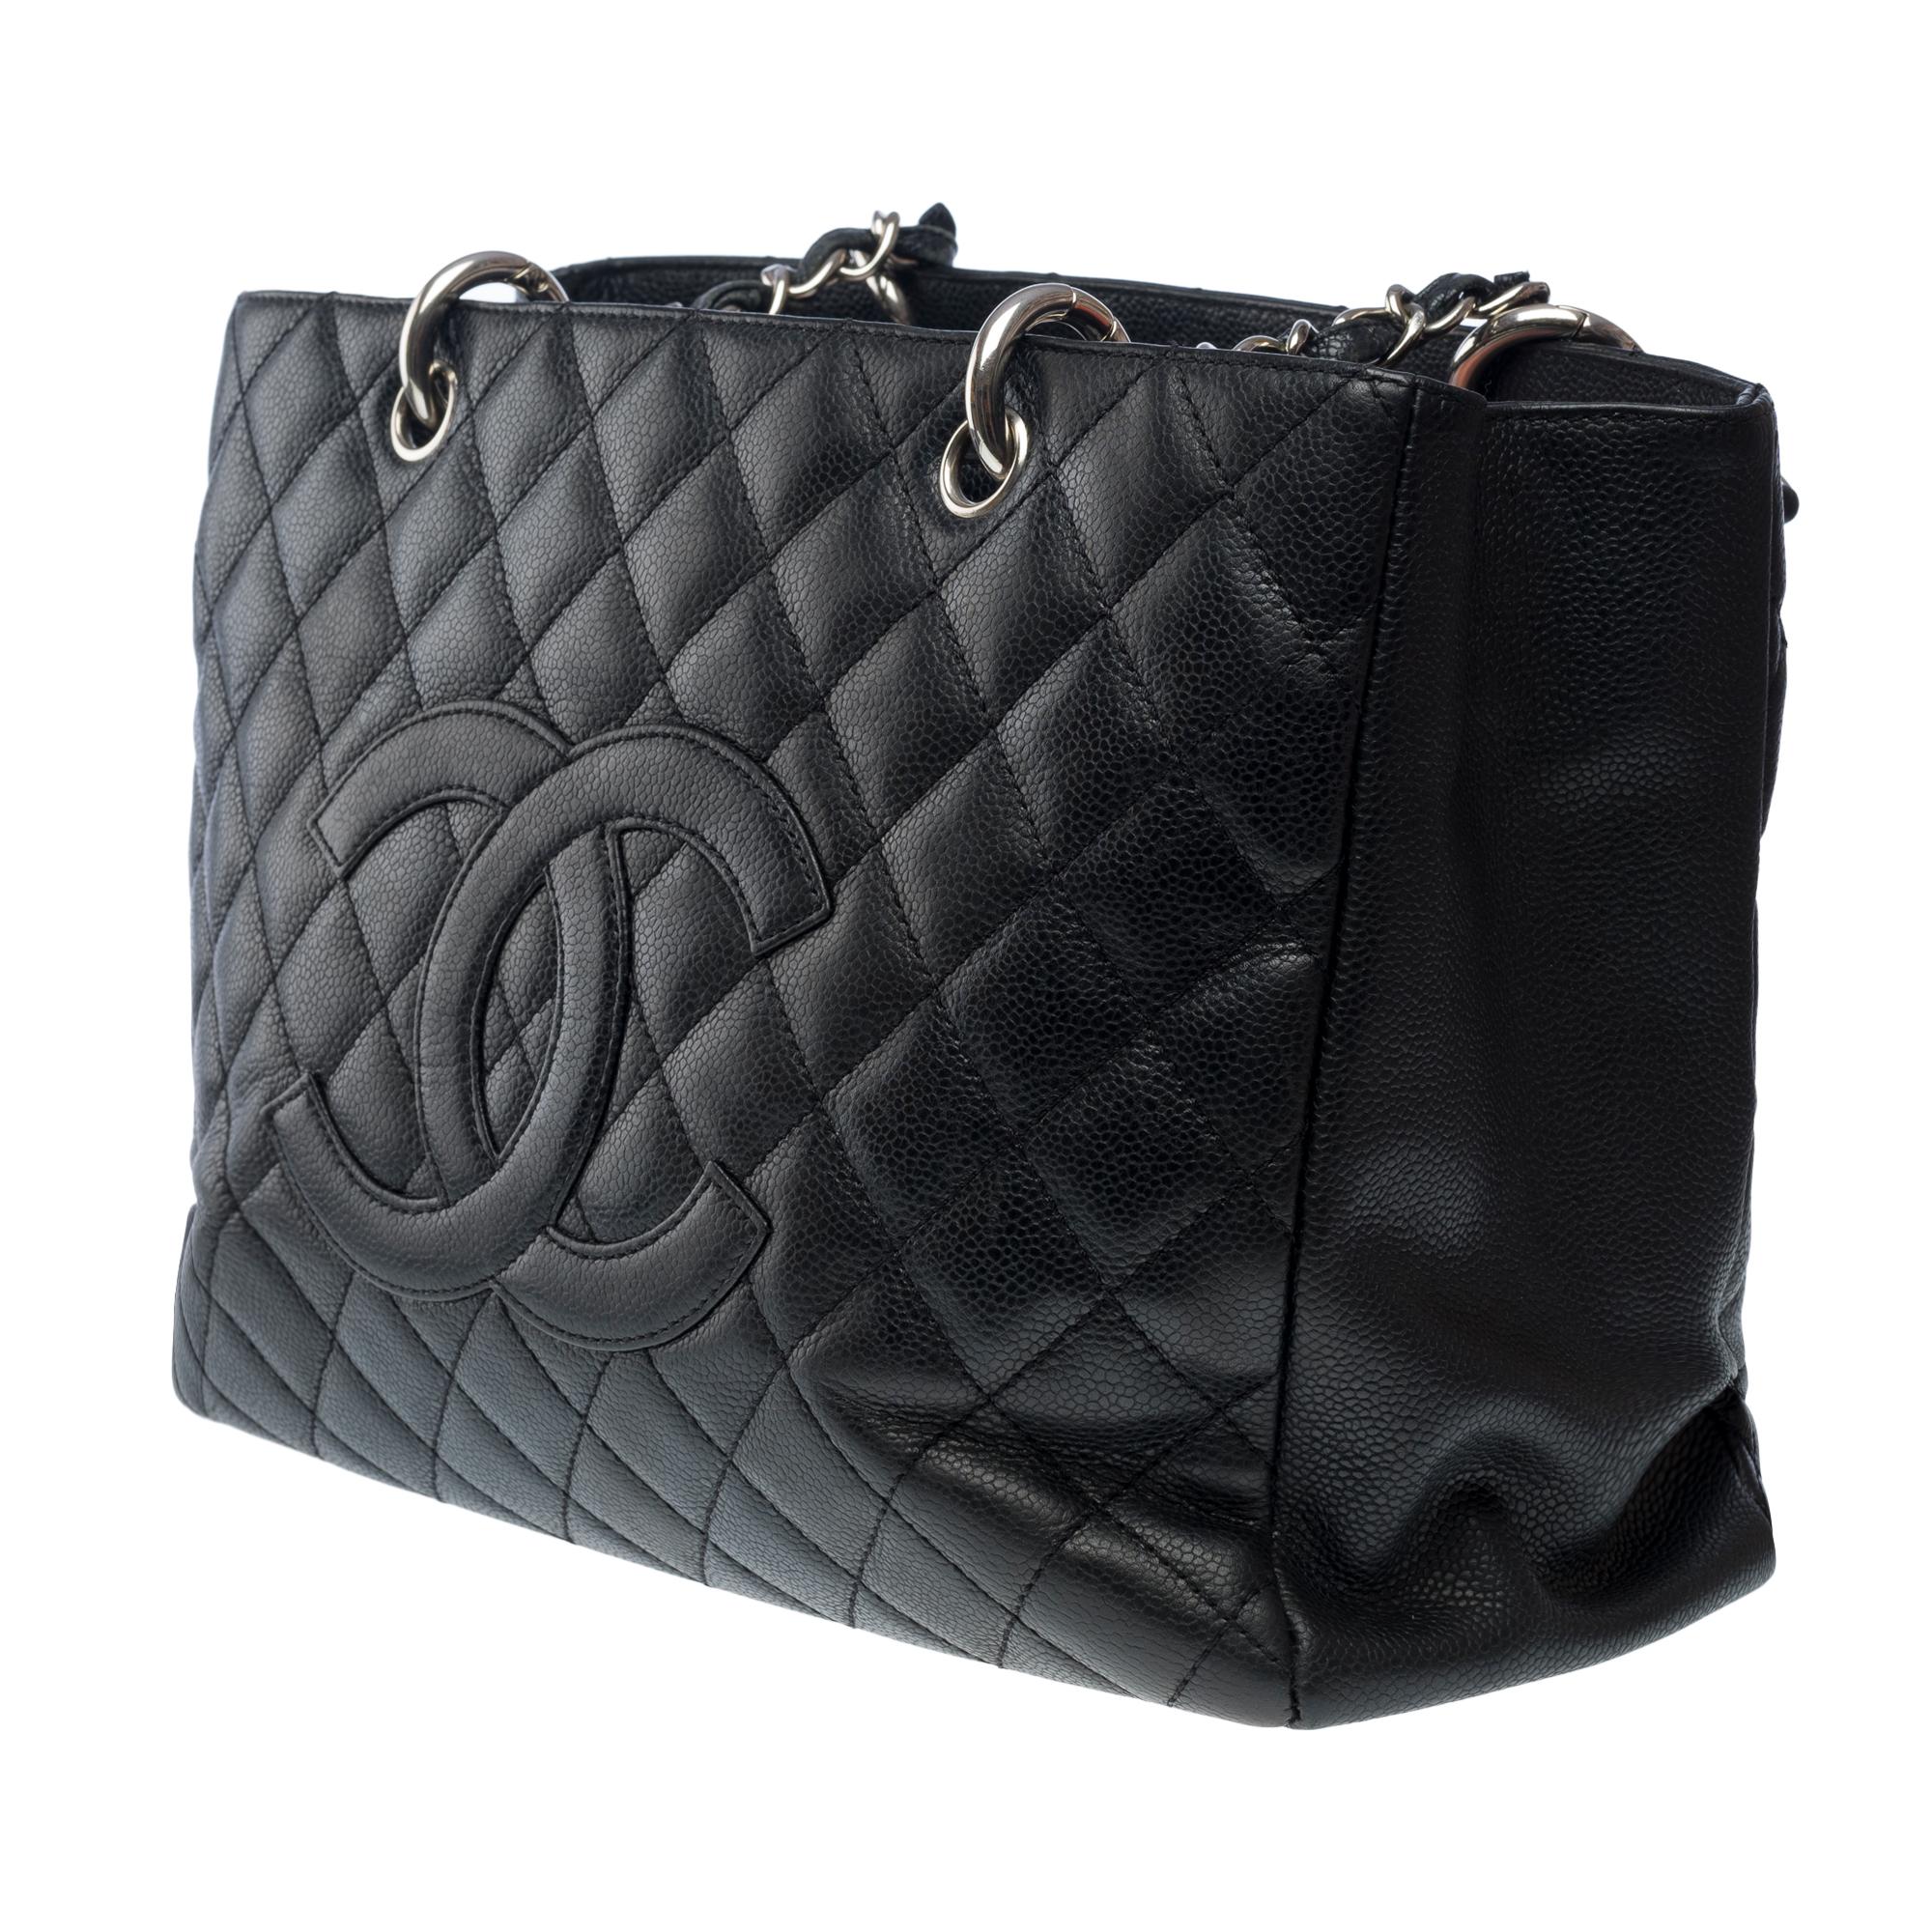  Chanel Grand Shopping Tote bag (GST) en cuir matelassé Caviar noir, SHW Pour femmes en vente